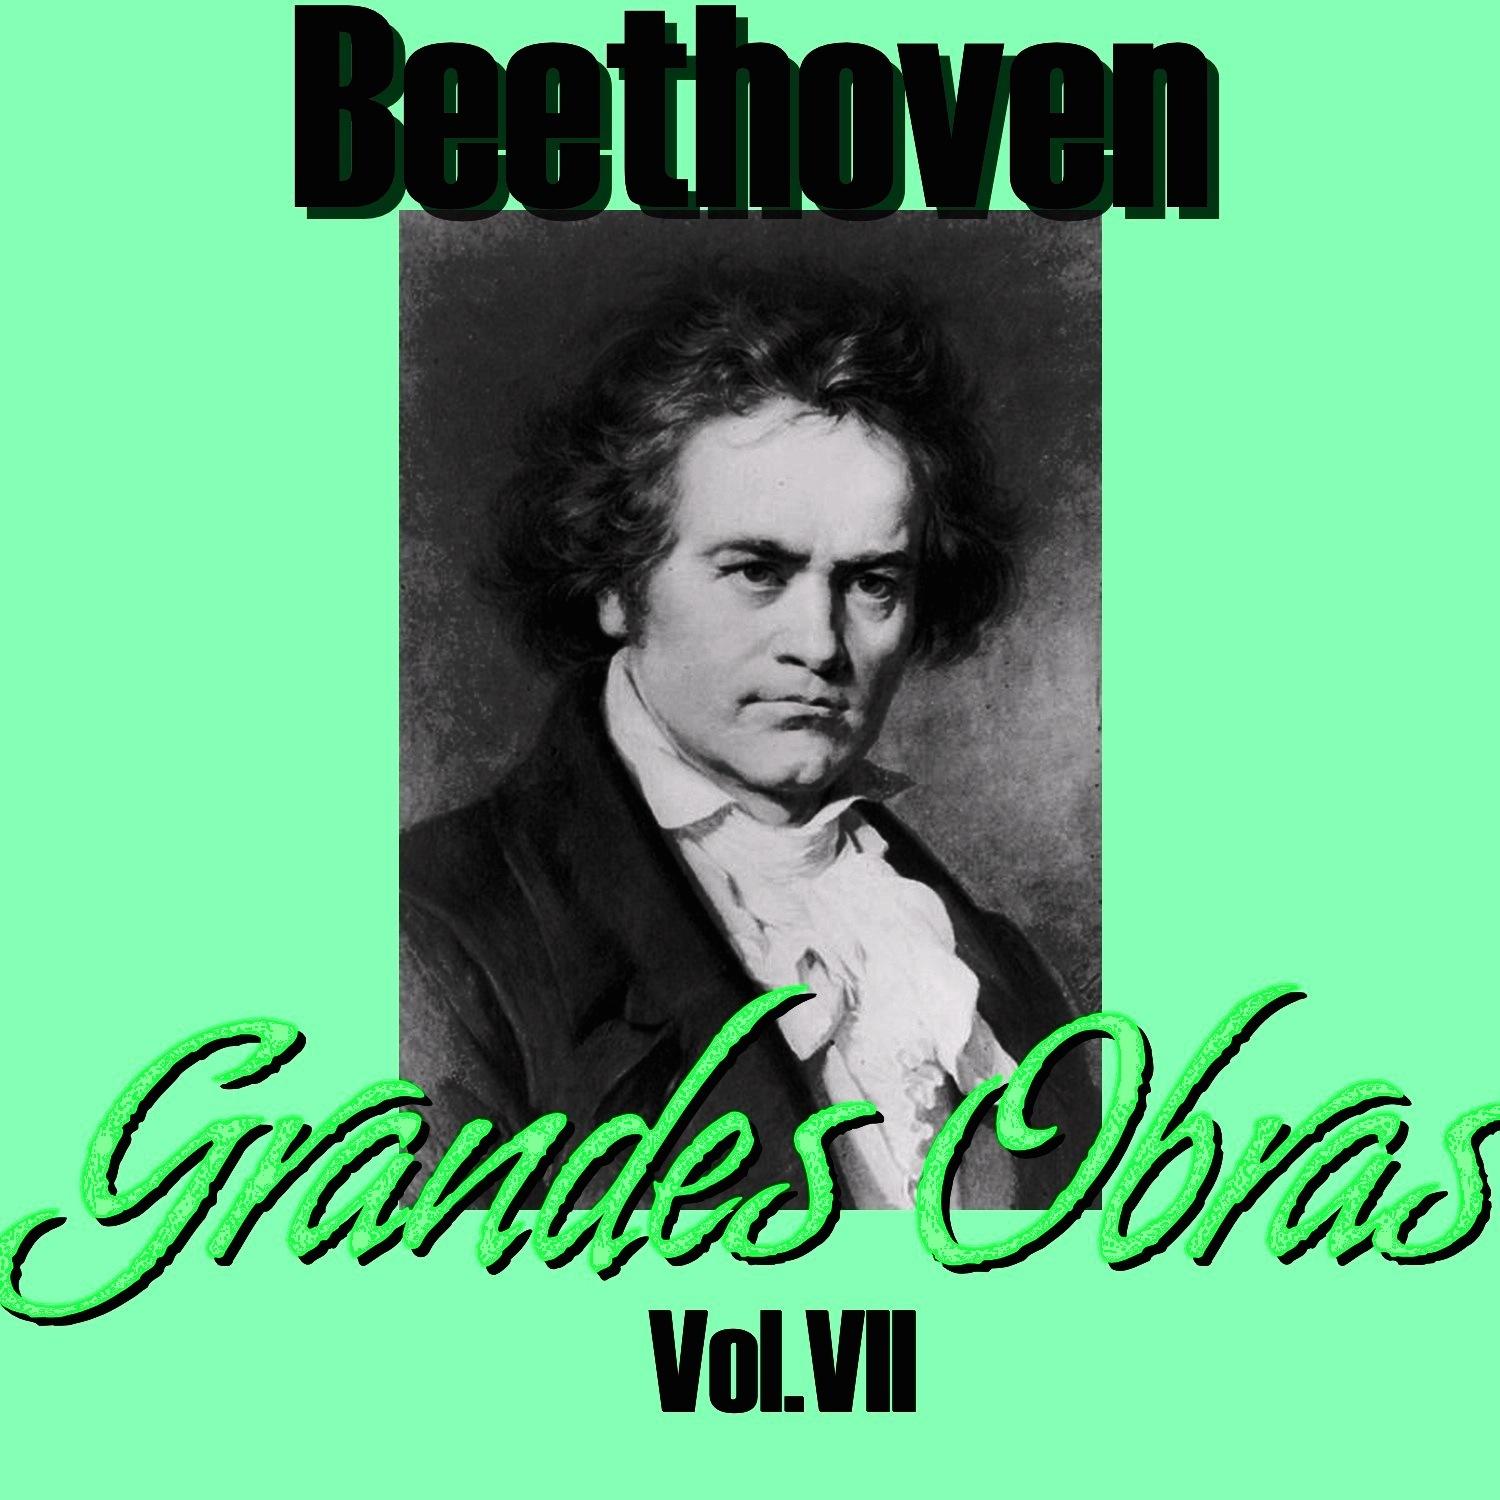 Beethoven Grandes Obras Vol.VII